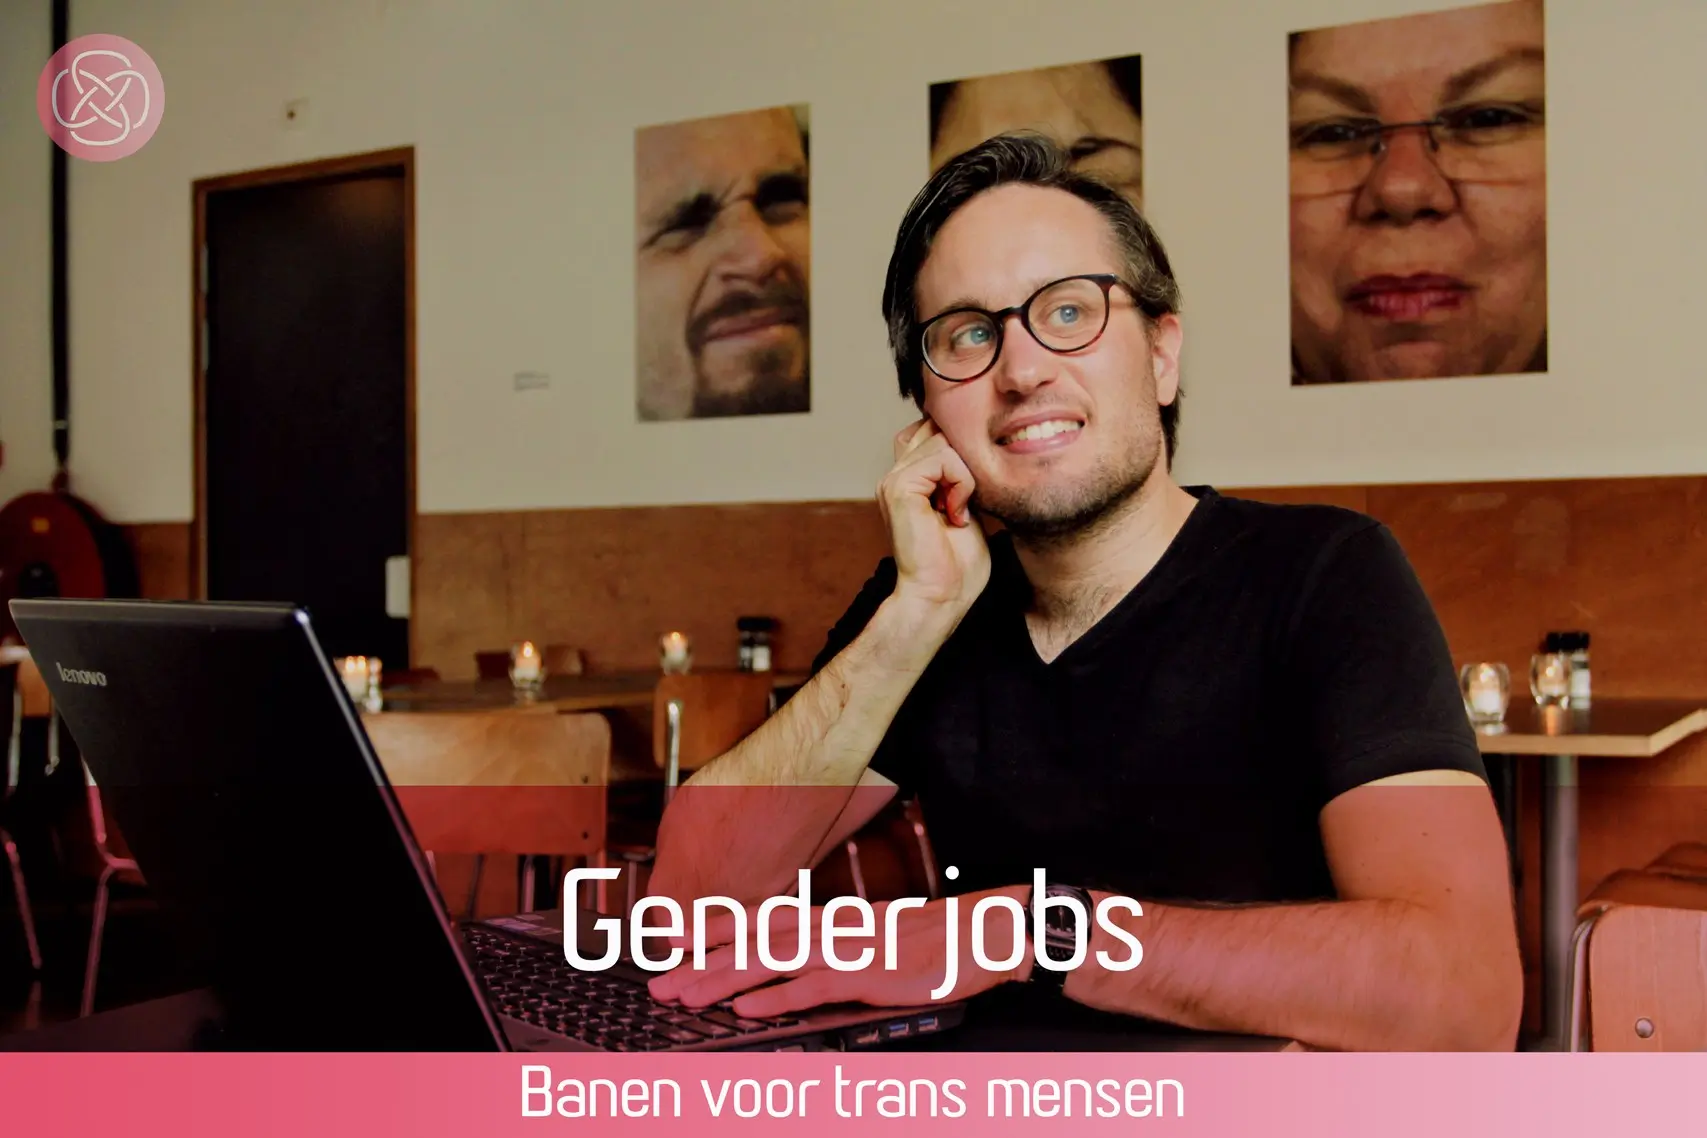 Genderjobs is het recrtuitment en bemiddelingsbureau voor transgenders